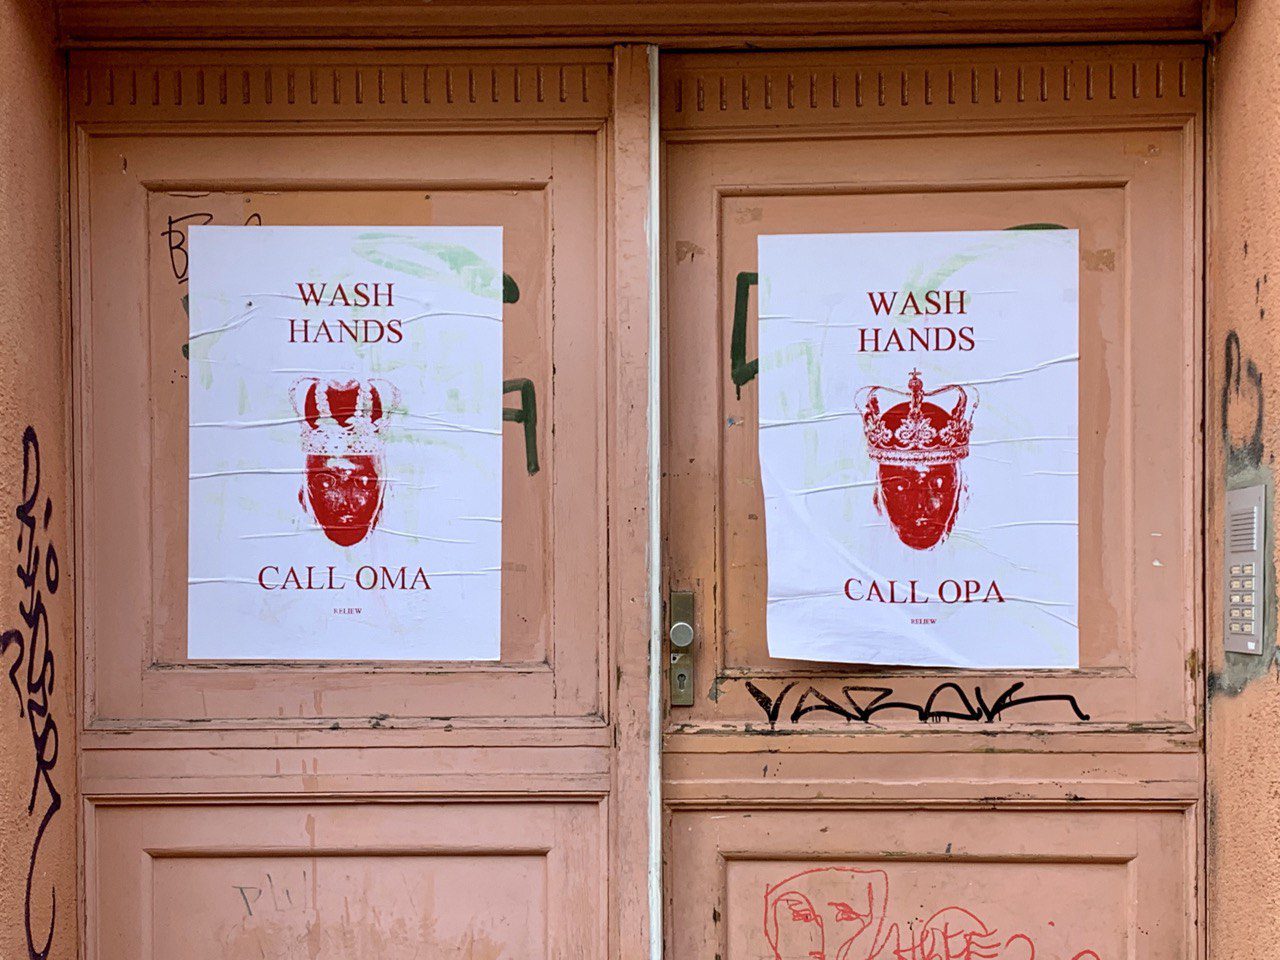 Zwei weiße Plakate auf einer rosa-orange farbigen Tür. Auf den Plakaten ist ein rotes Herz mit Krone zu sehen. Auf dem linken Plakat steht Wash Hands - Call Oma; auf dem rechten Plakat steht Wash Hands - Call Opa.